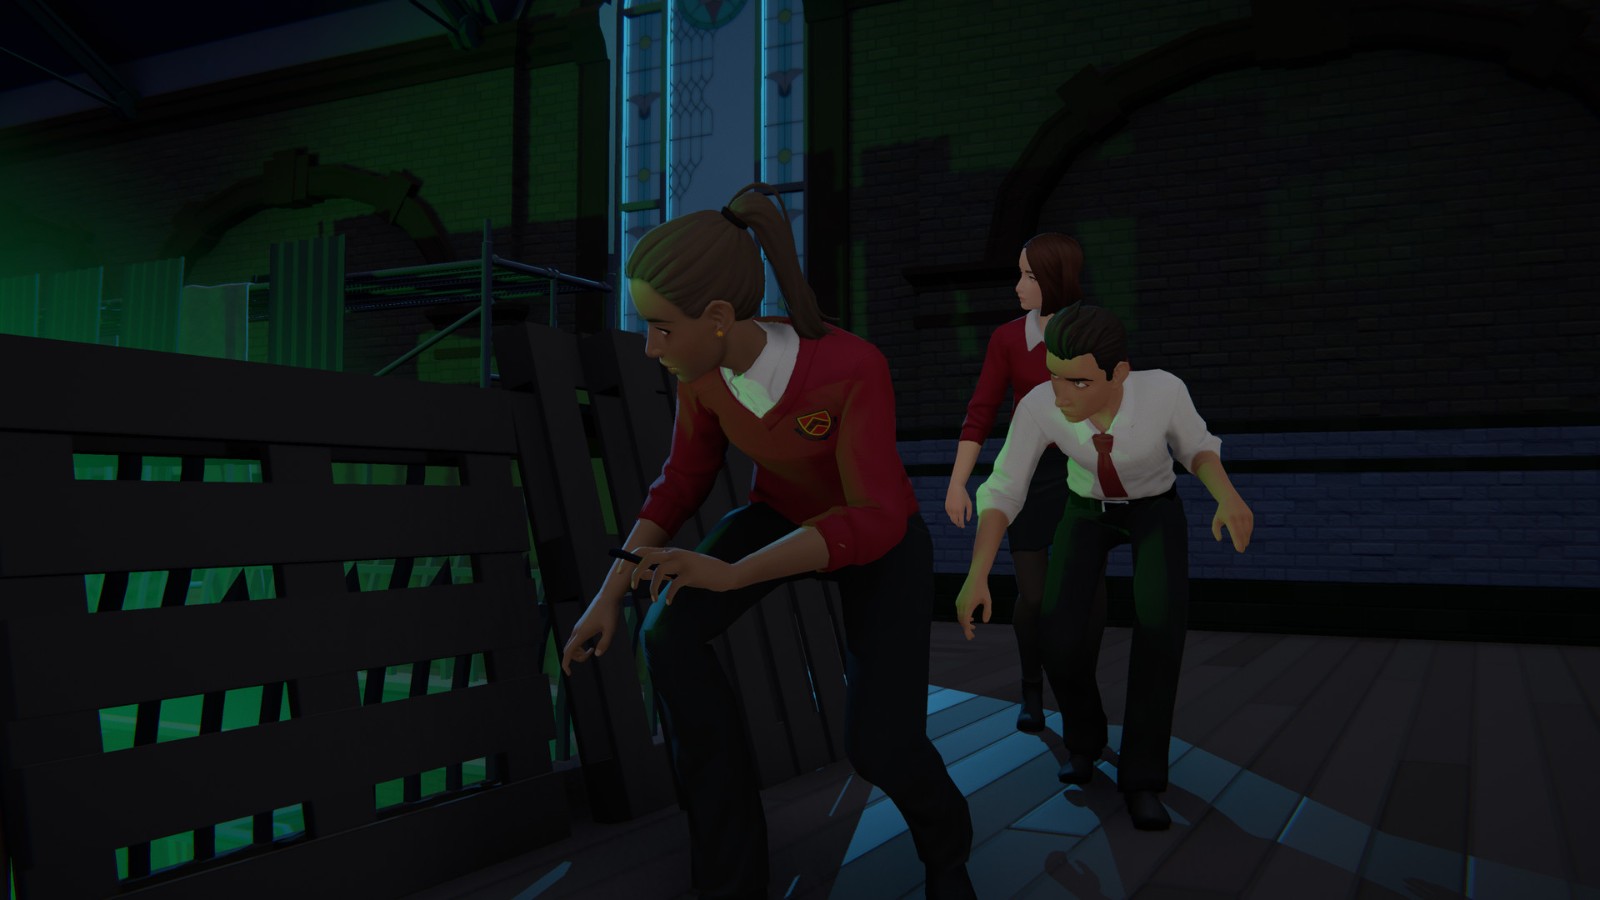 第三人称单人冒险游戏《终点站》7月22日登陆各大平台